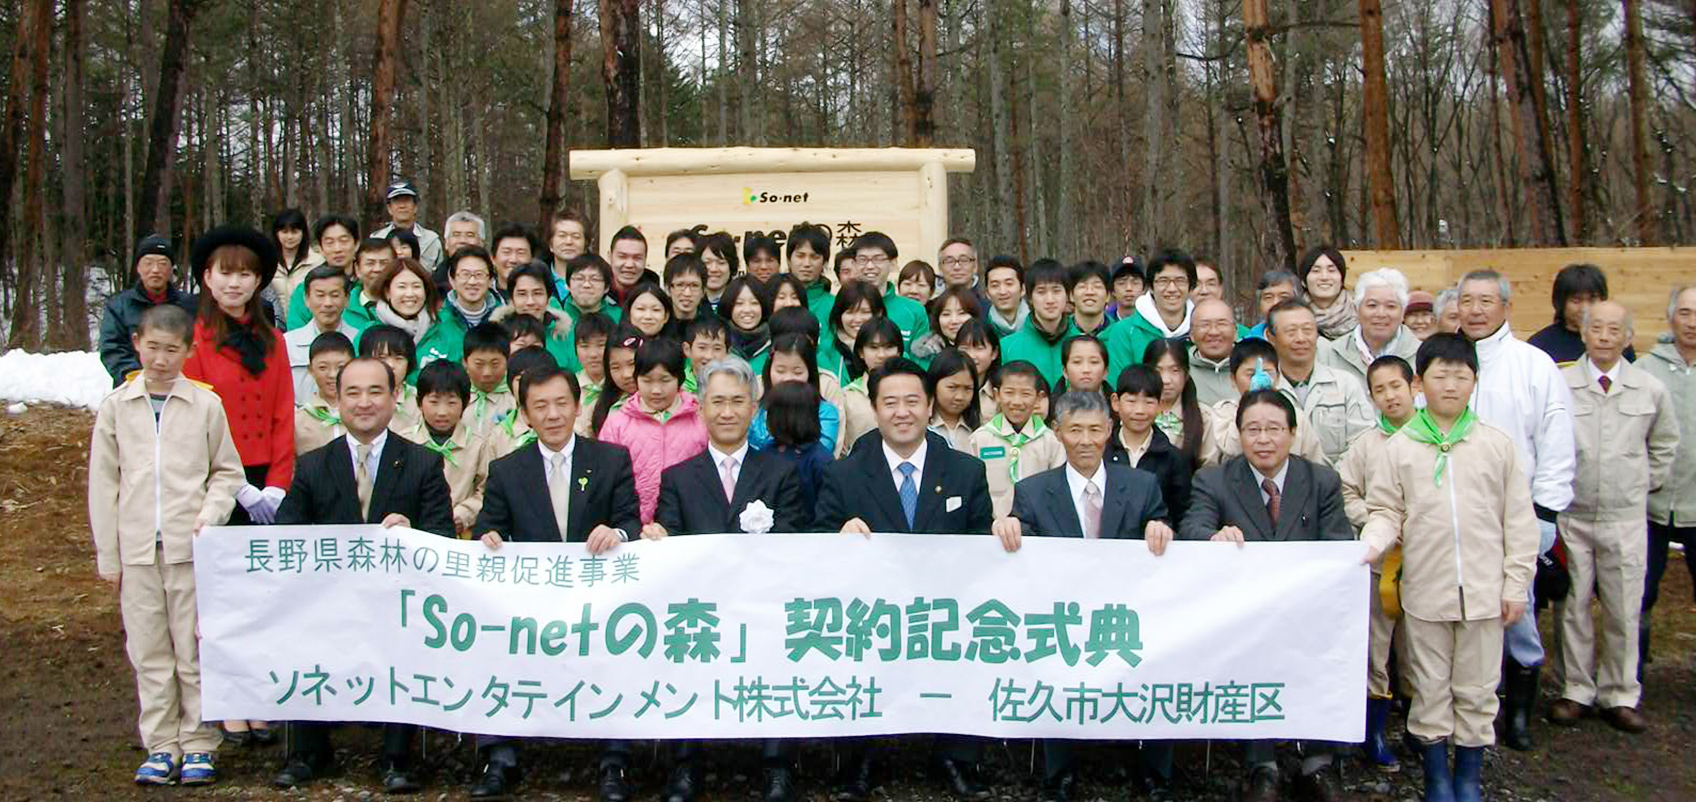 木の看板の前で参加者が集合しており、「So-netの森」と書かれた横断幕をもっている